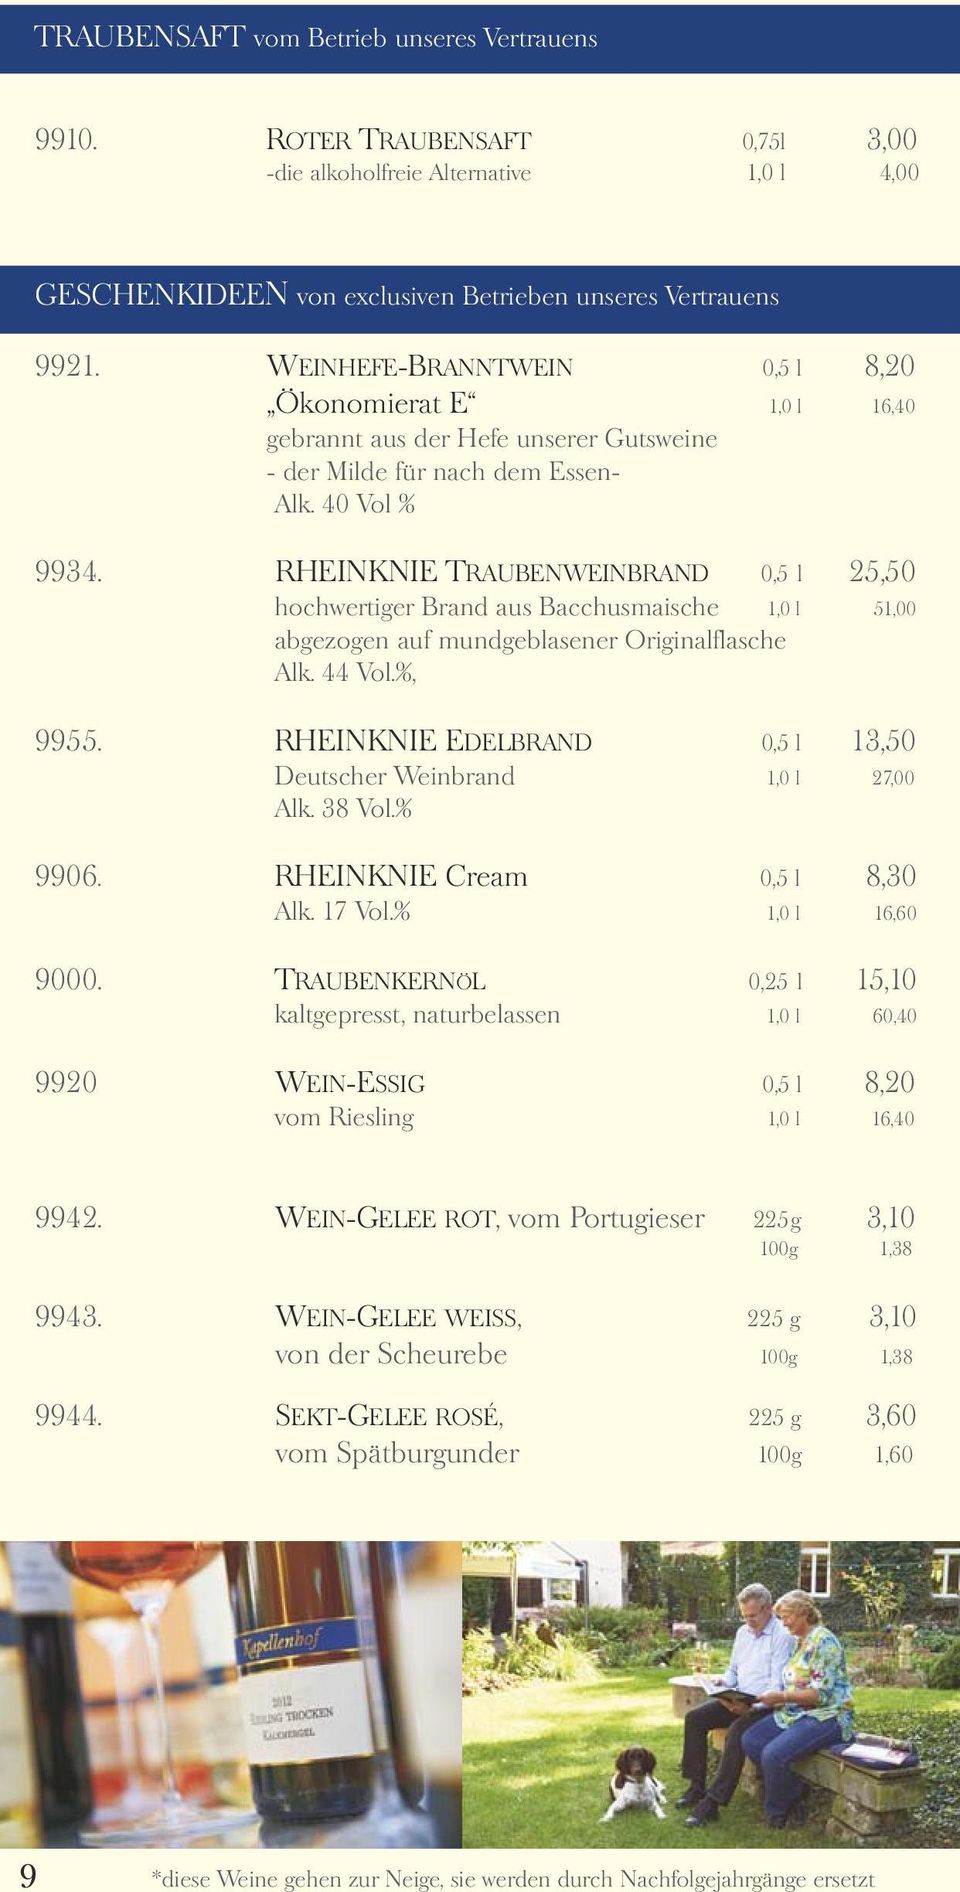 WEINHEFE-BRANNTWEIN Ökonomierat E gebrannt aus der Hefe unserer Gutsweine - der Milde für nach dem Essen- Alk. 40 Vol % 0,5 l 8,20 1,0 l 16,40 9934.